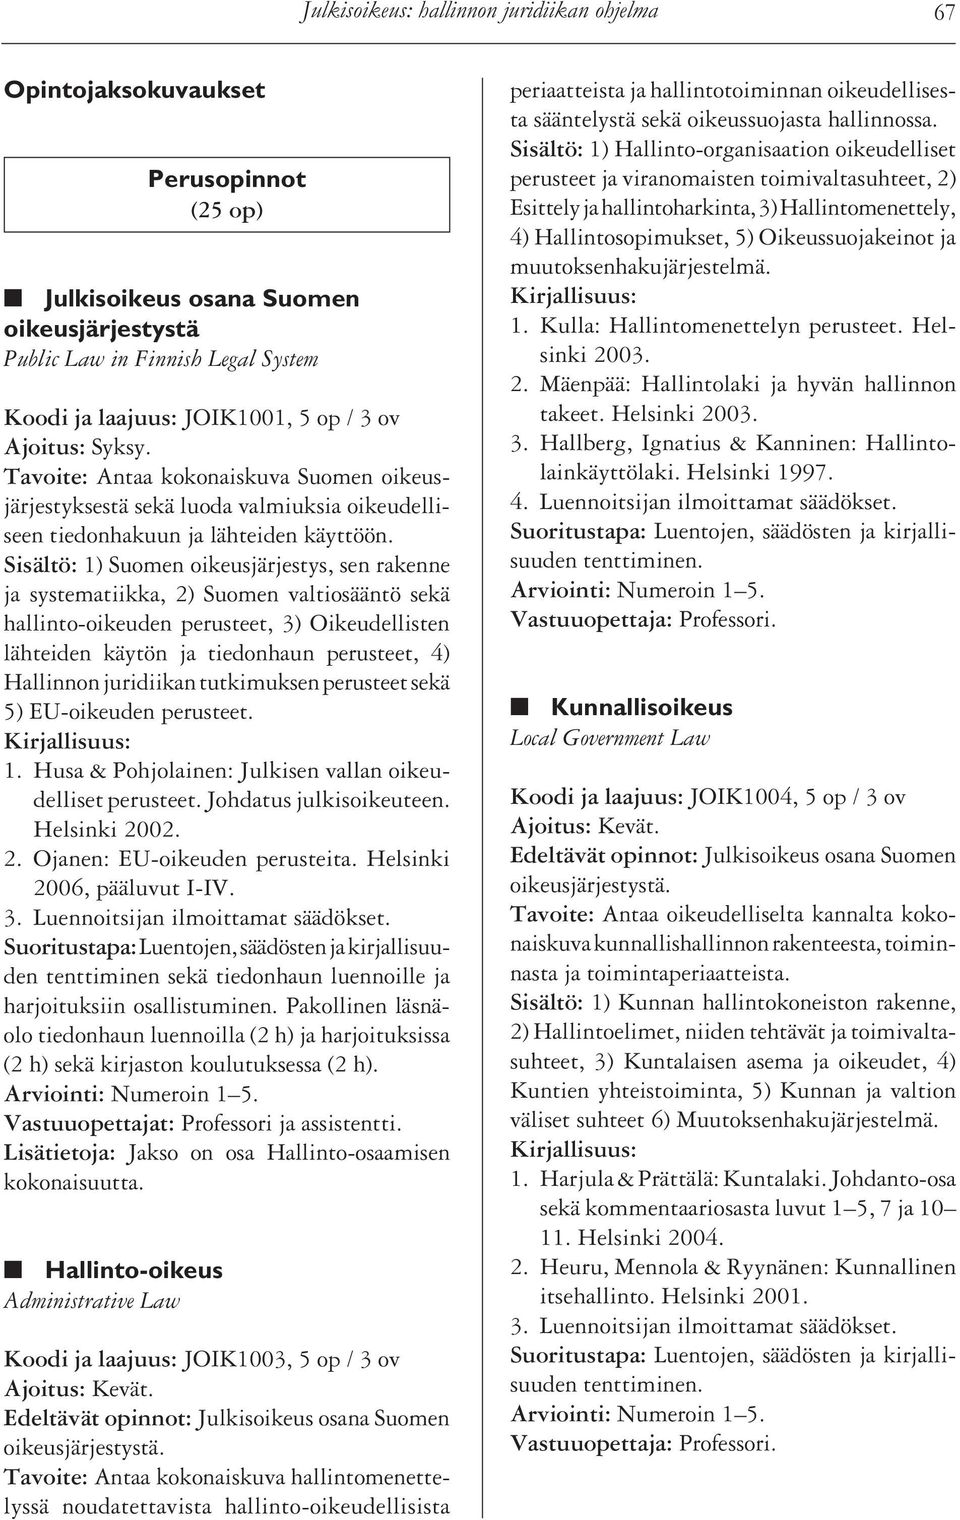 Sisältö: 1) Suomen oikeusjärjestys, sen rakenne ja systematiikka, 2) Suomen valtiosääntö sekä hallinto-oikeuden perusteet, 3) Oikeudellisten lähteiden käytön ja tiedonhaun perusteet, 4) Hallinnon